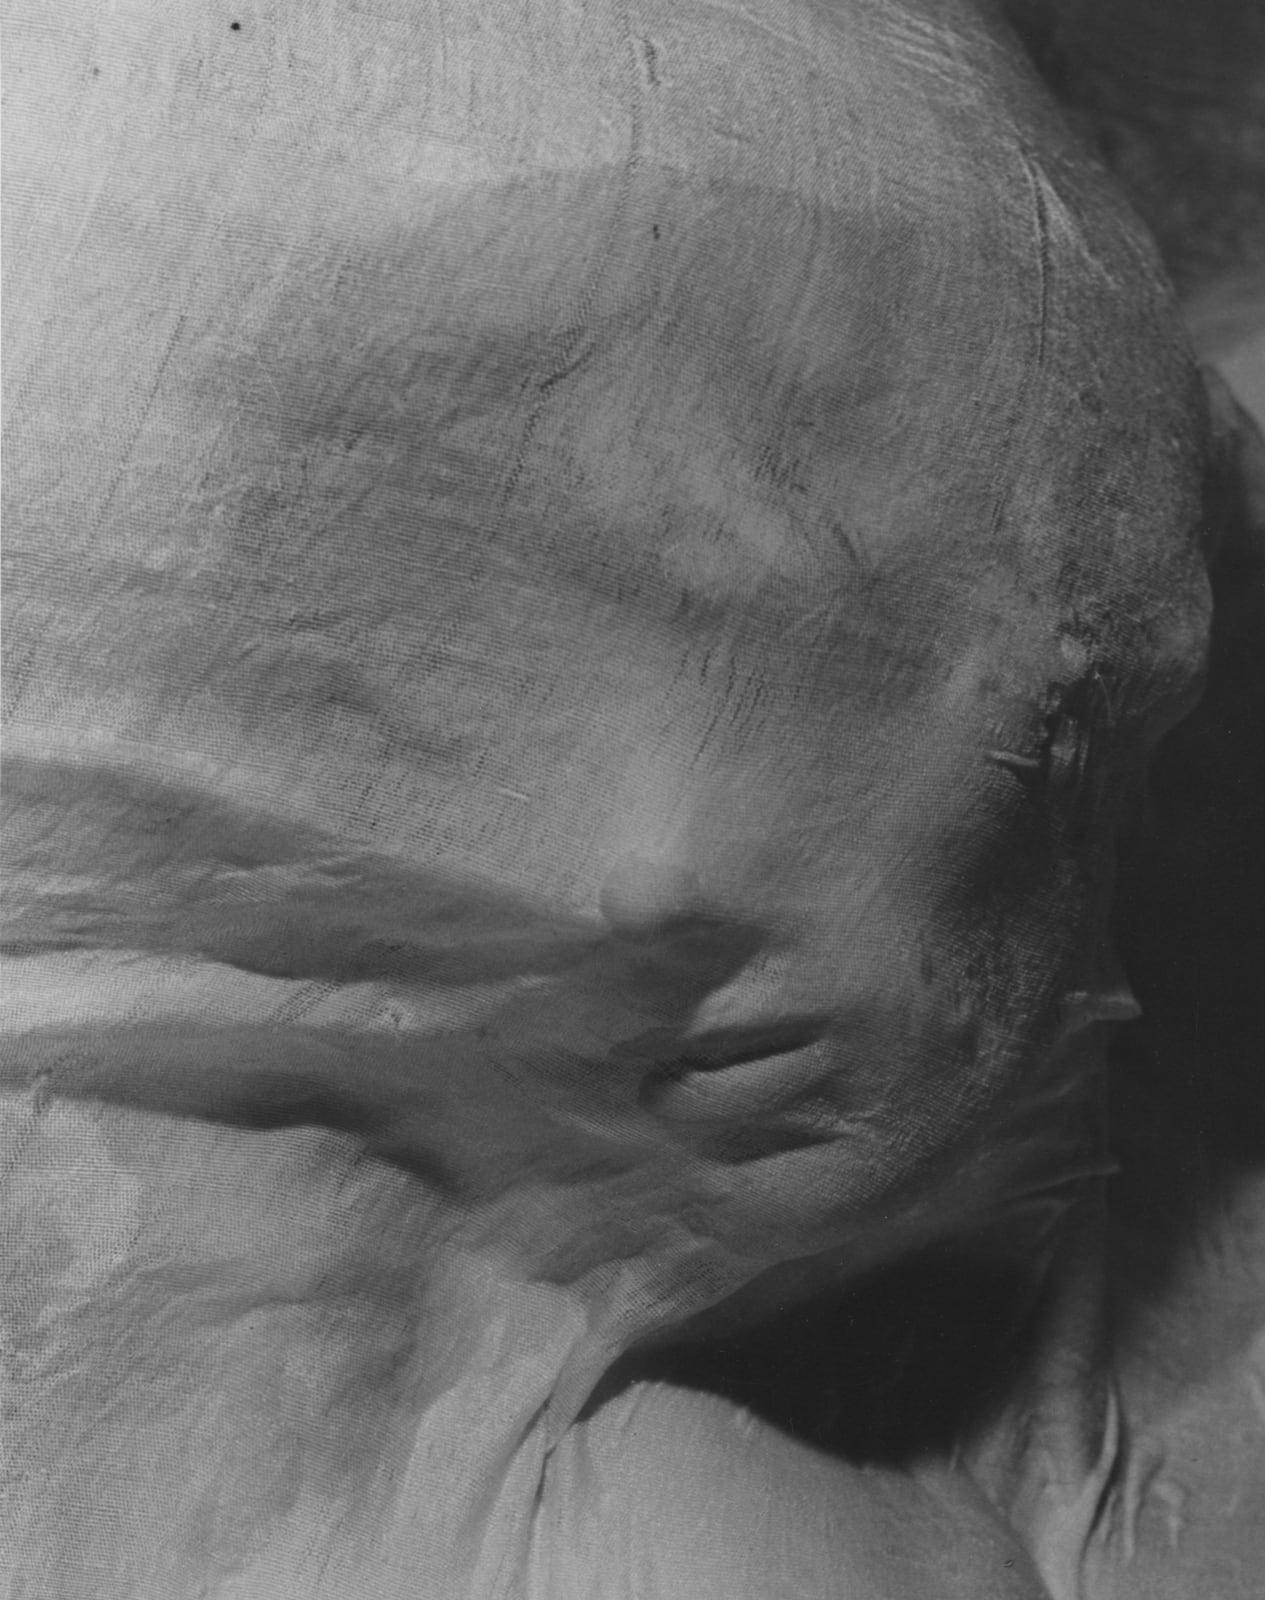 Erwin Blumenfeld Wet Veil woman's face under wet fabric